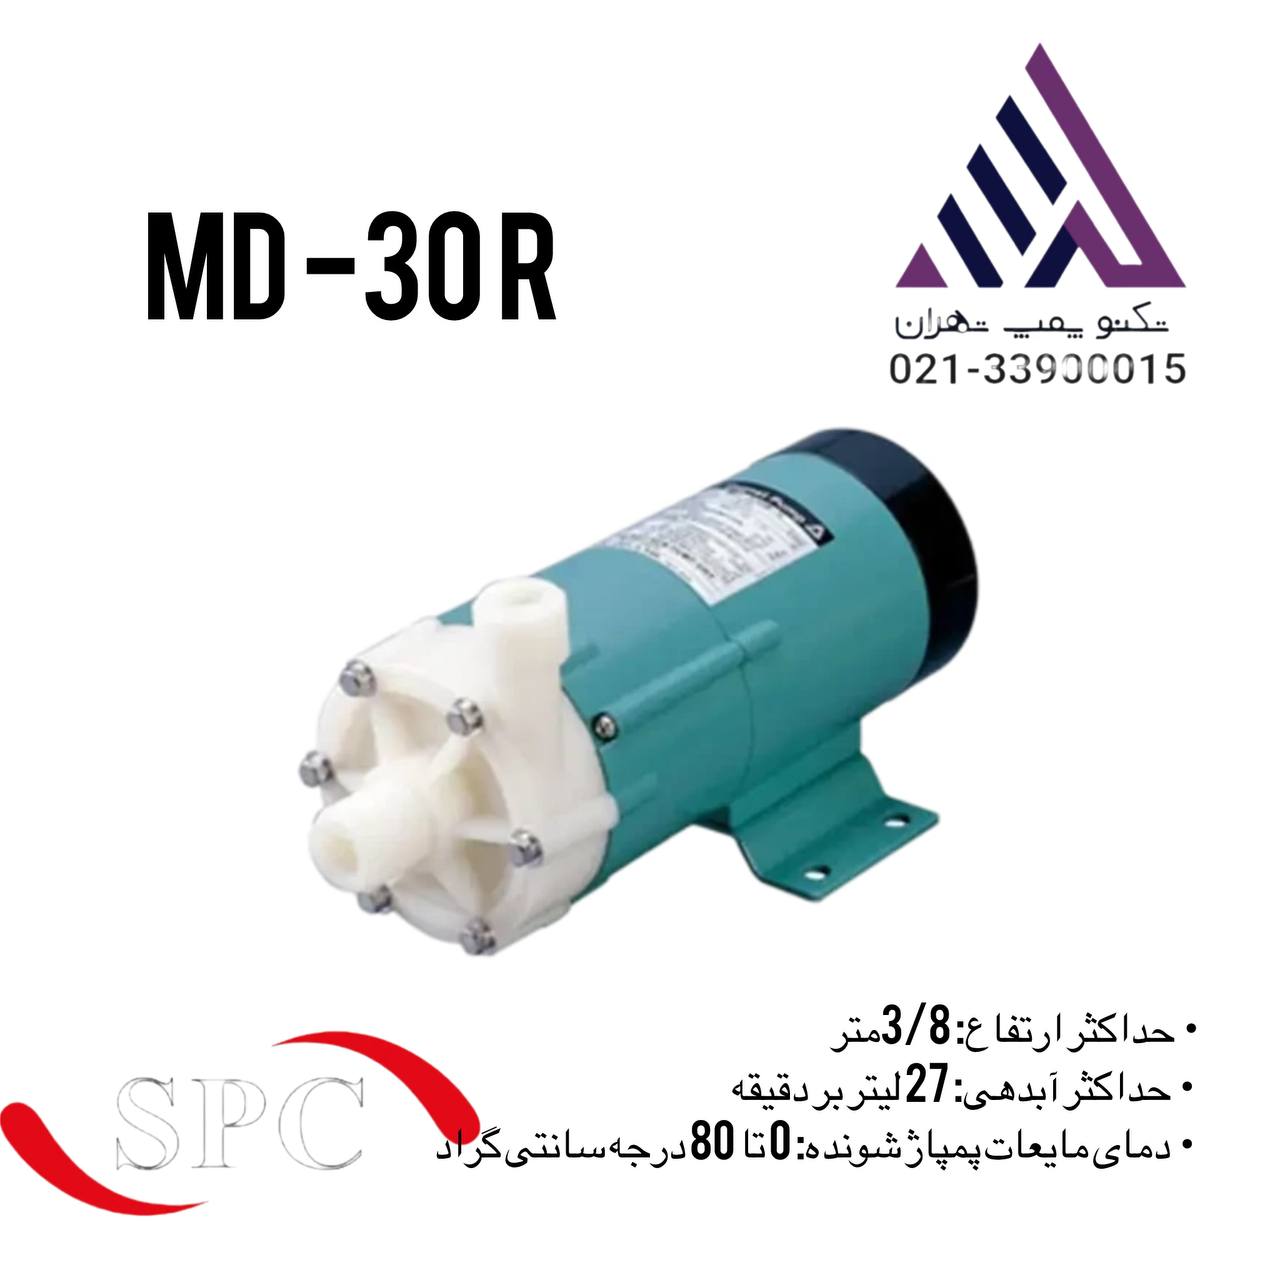 پمپ اسید مگنتی MDR30